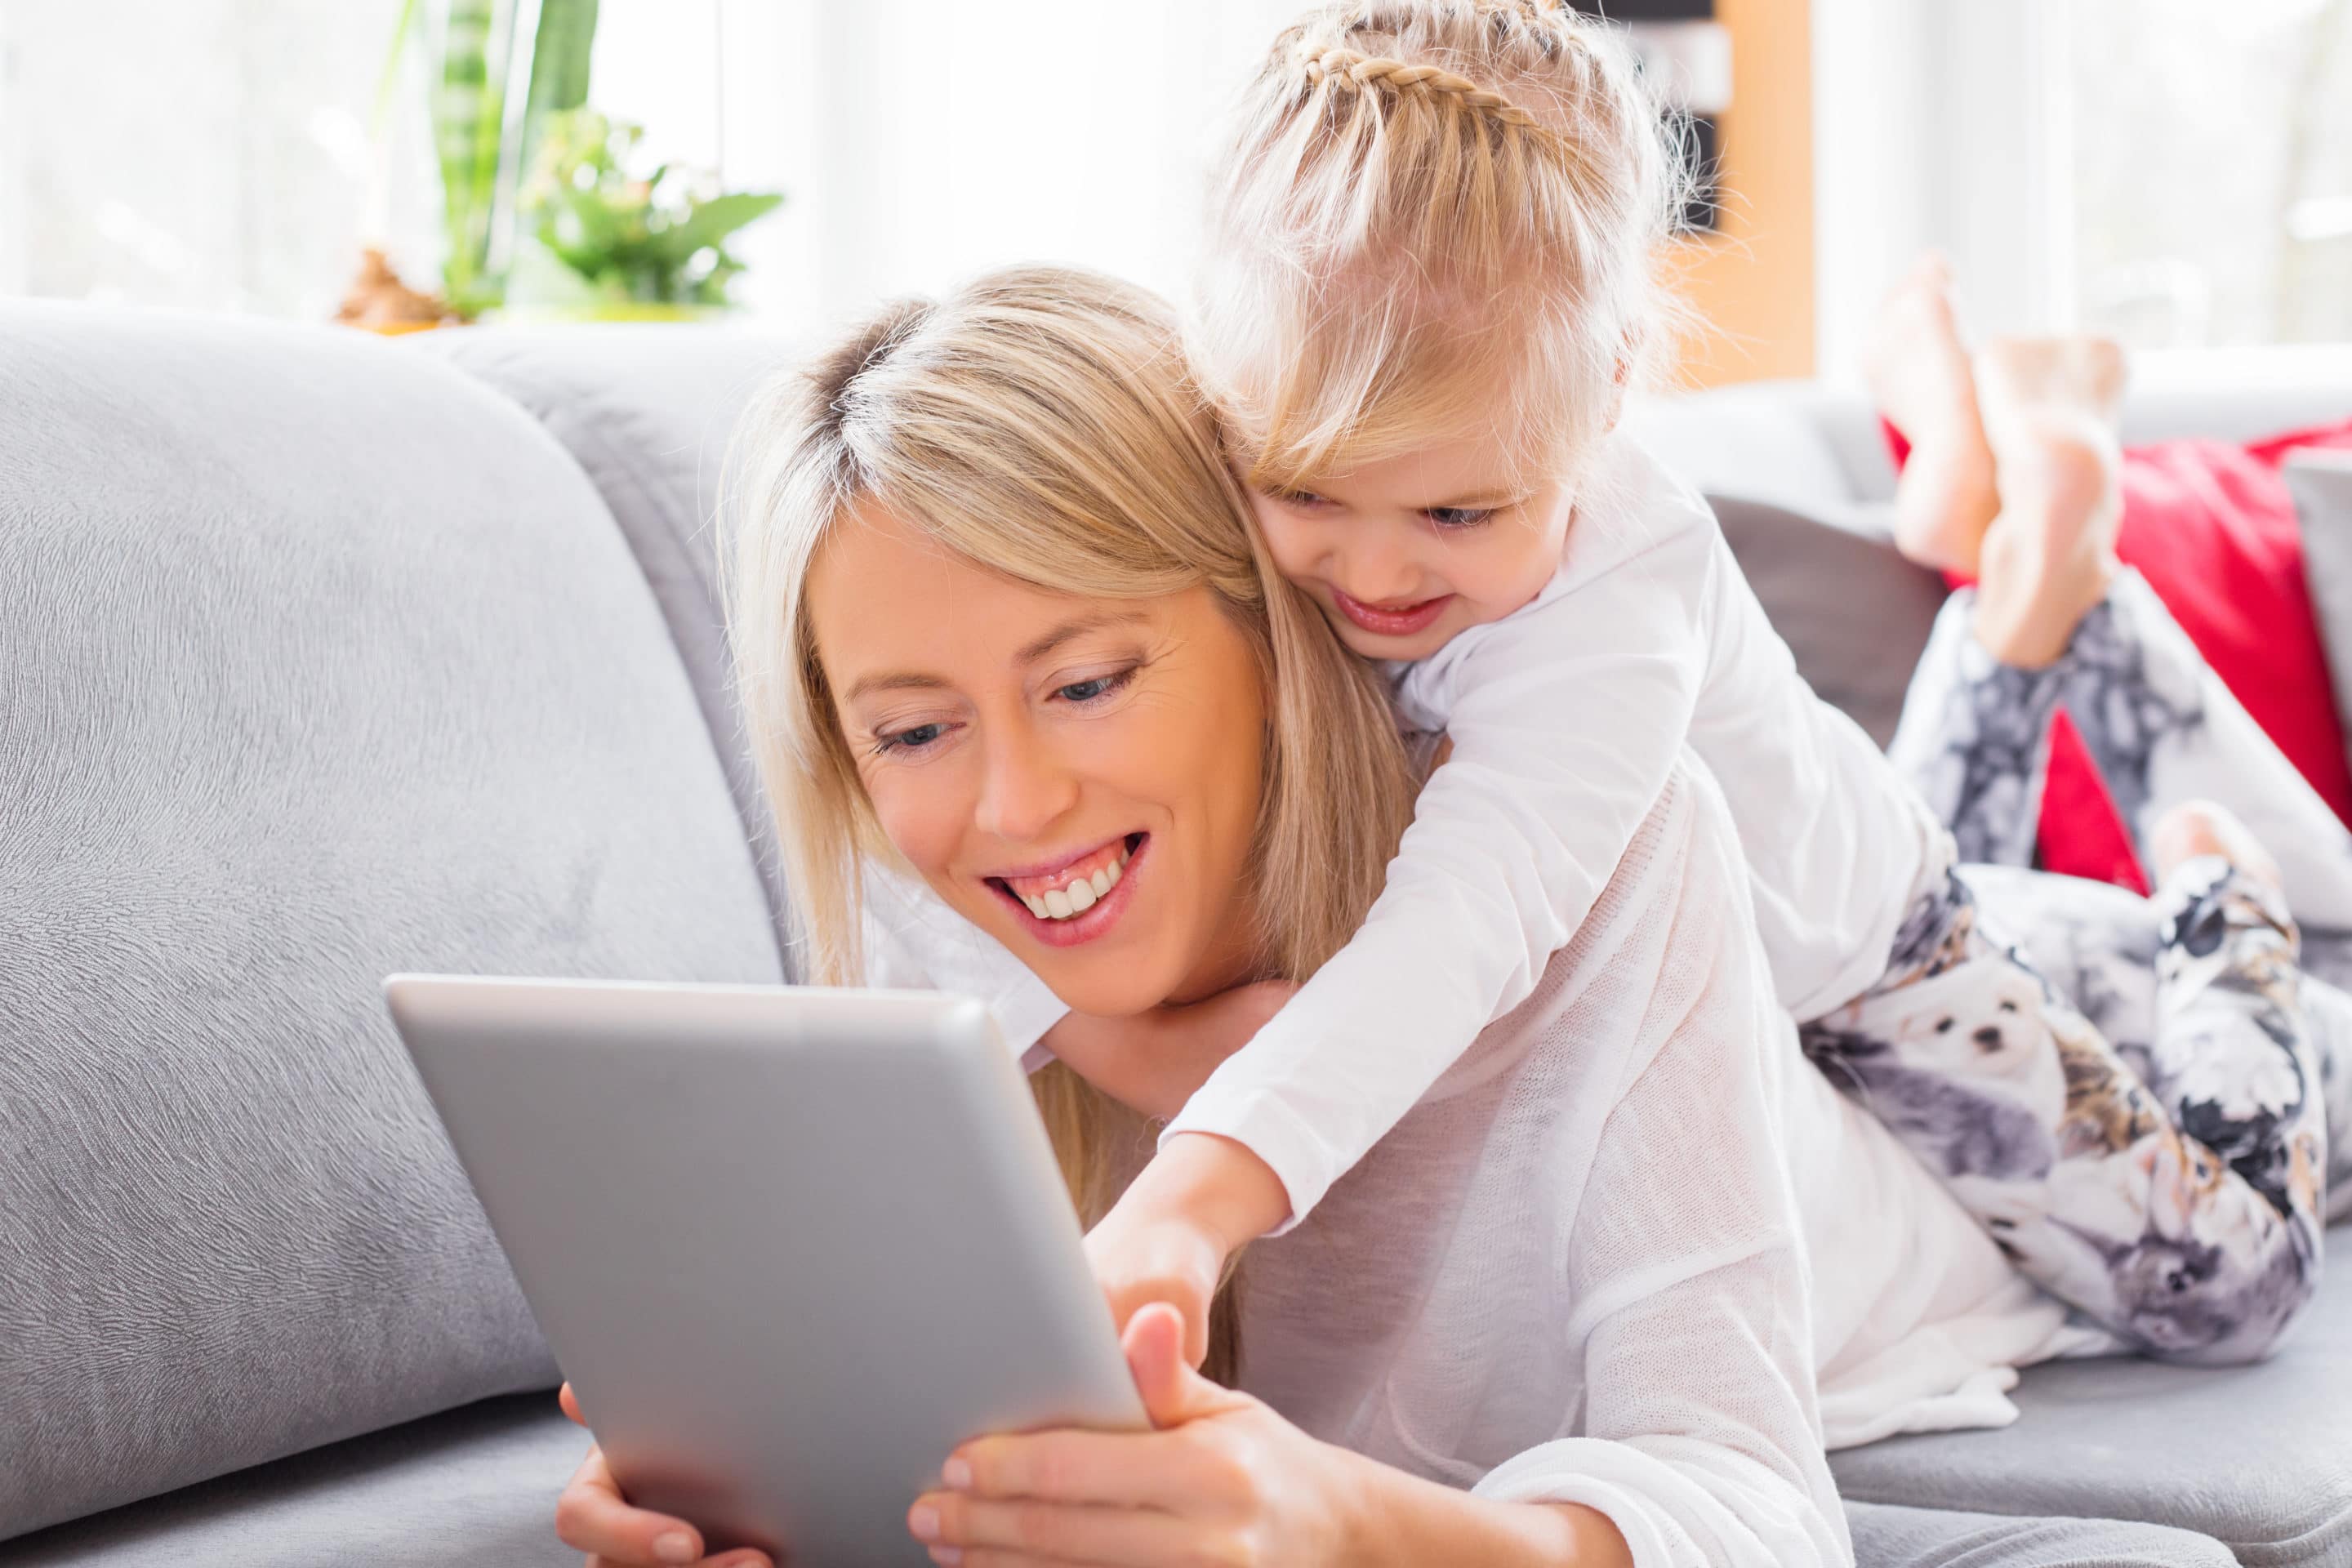 Matka a dítě se usmívají při používání iPadu chráněného sítí VPN.